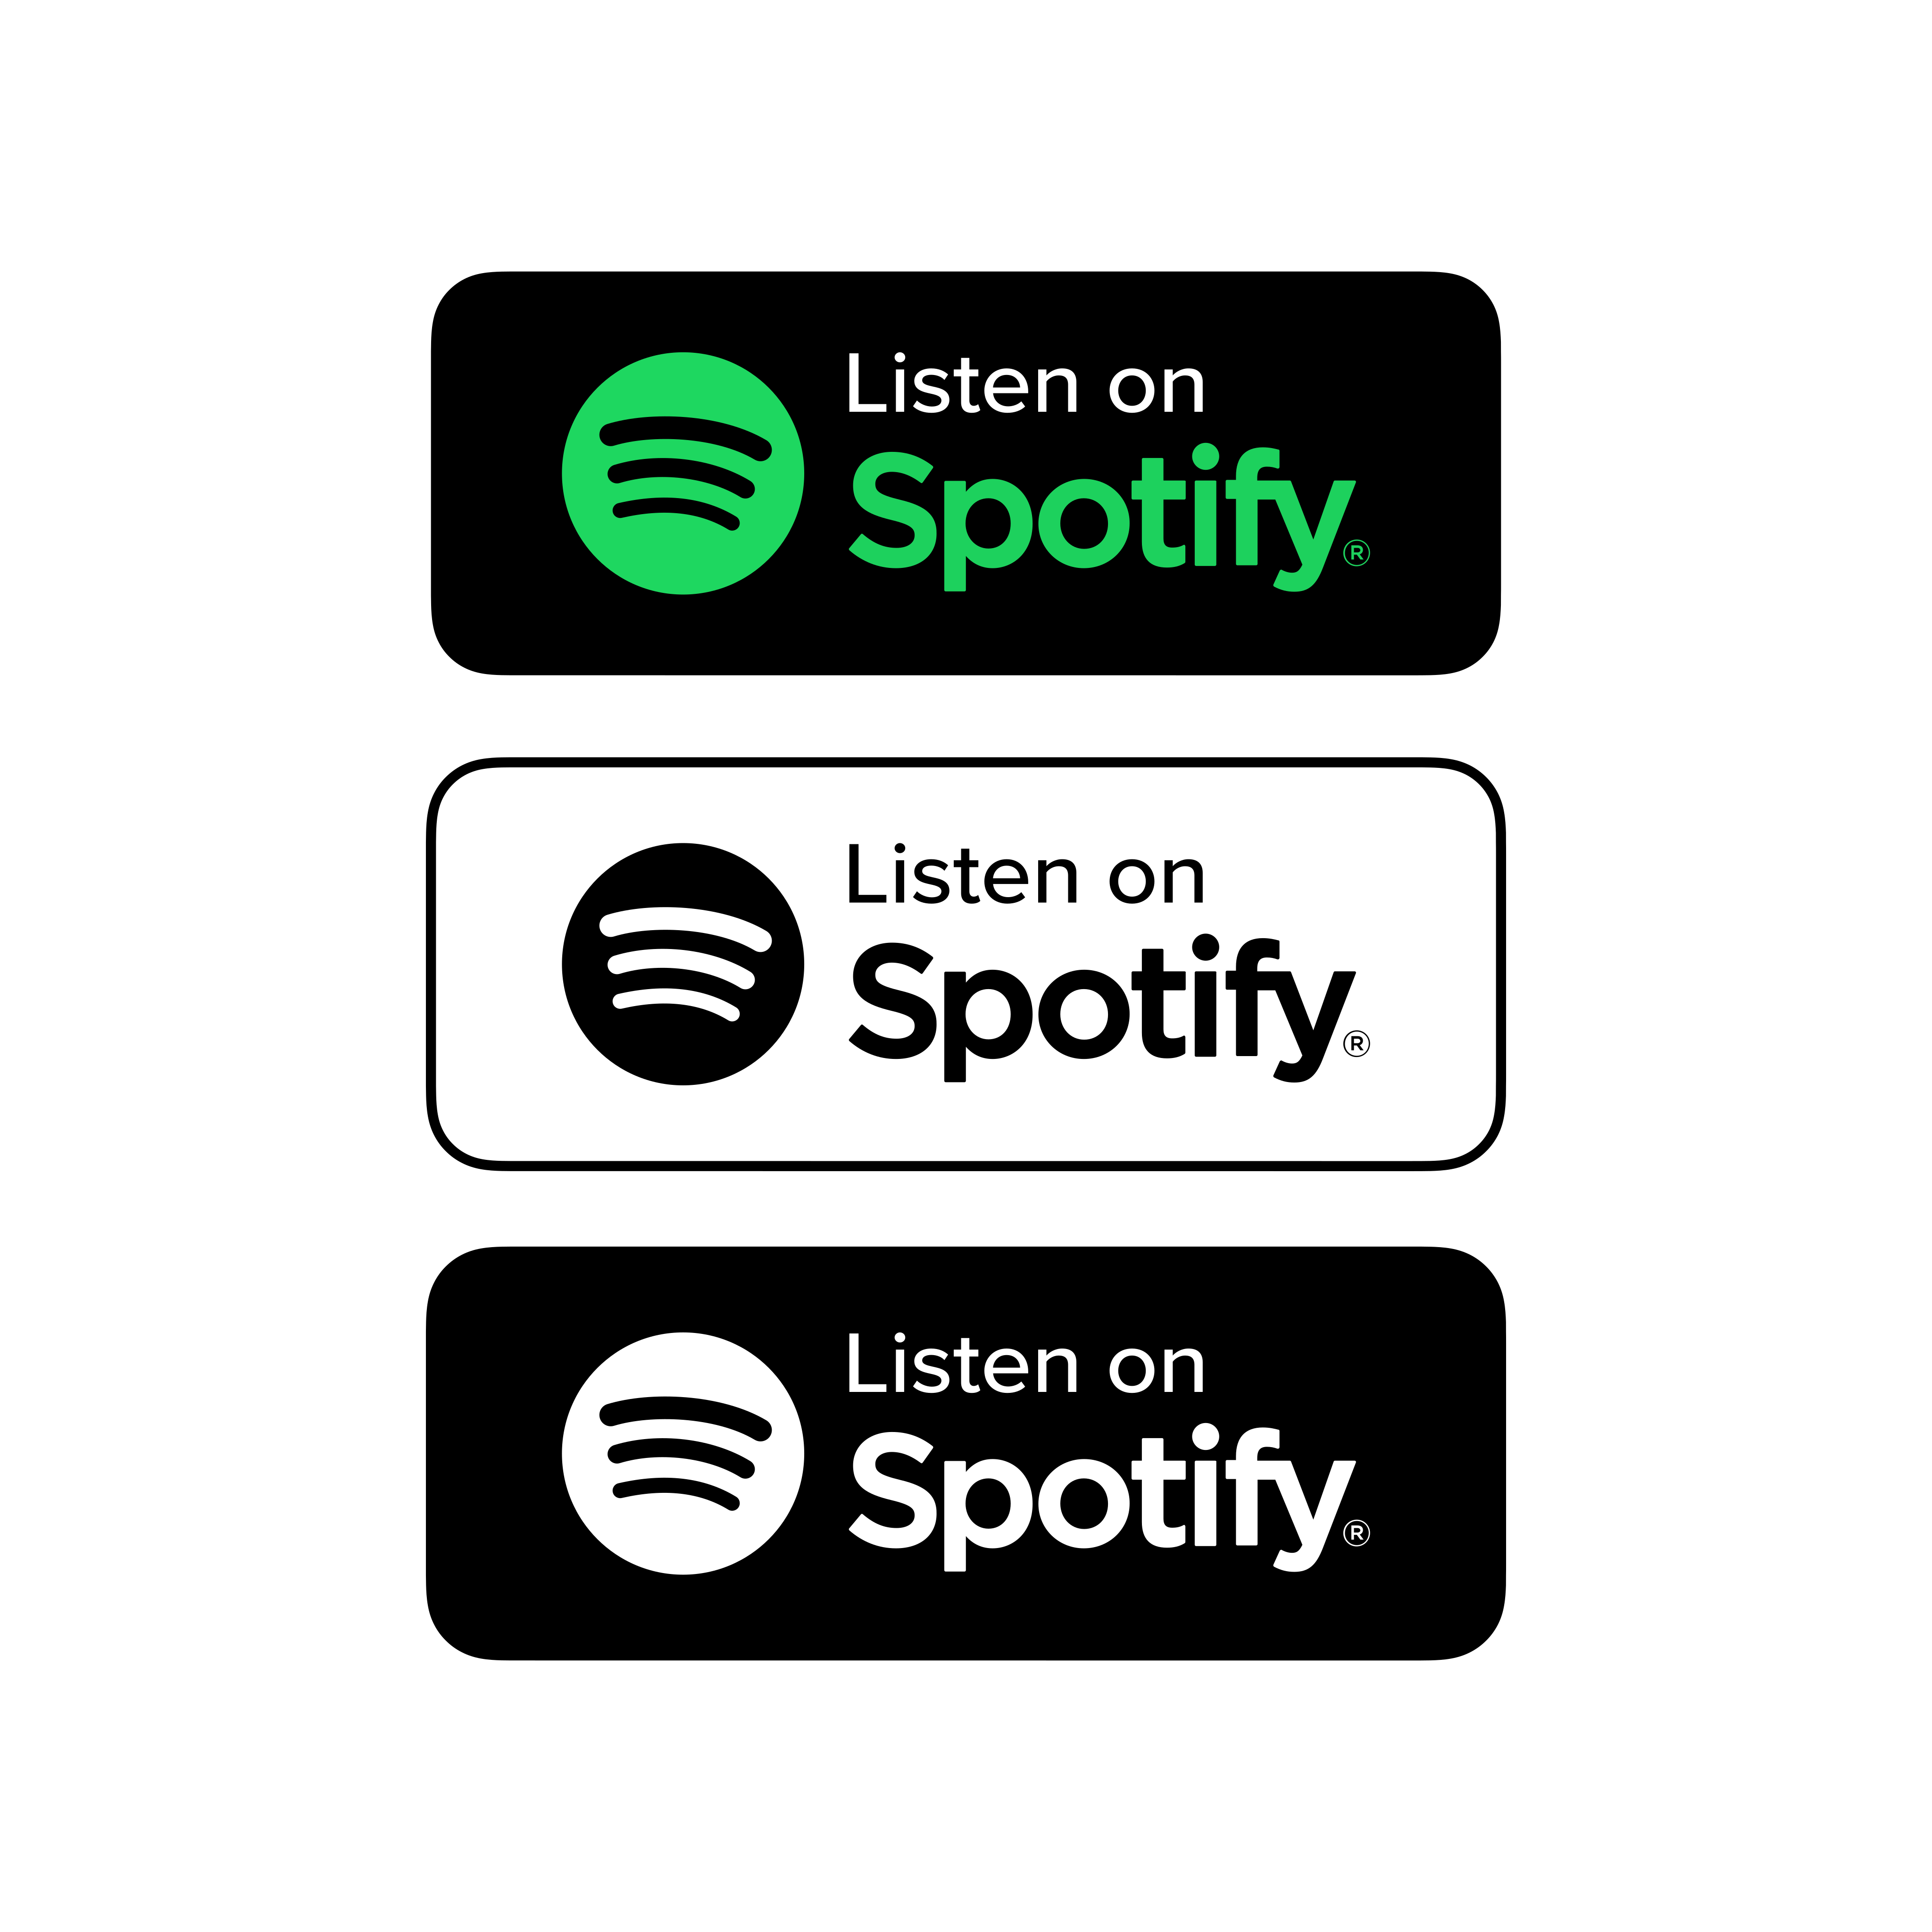 listen on spotify 0 - Listen on Spotify